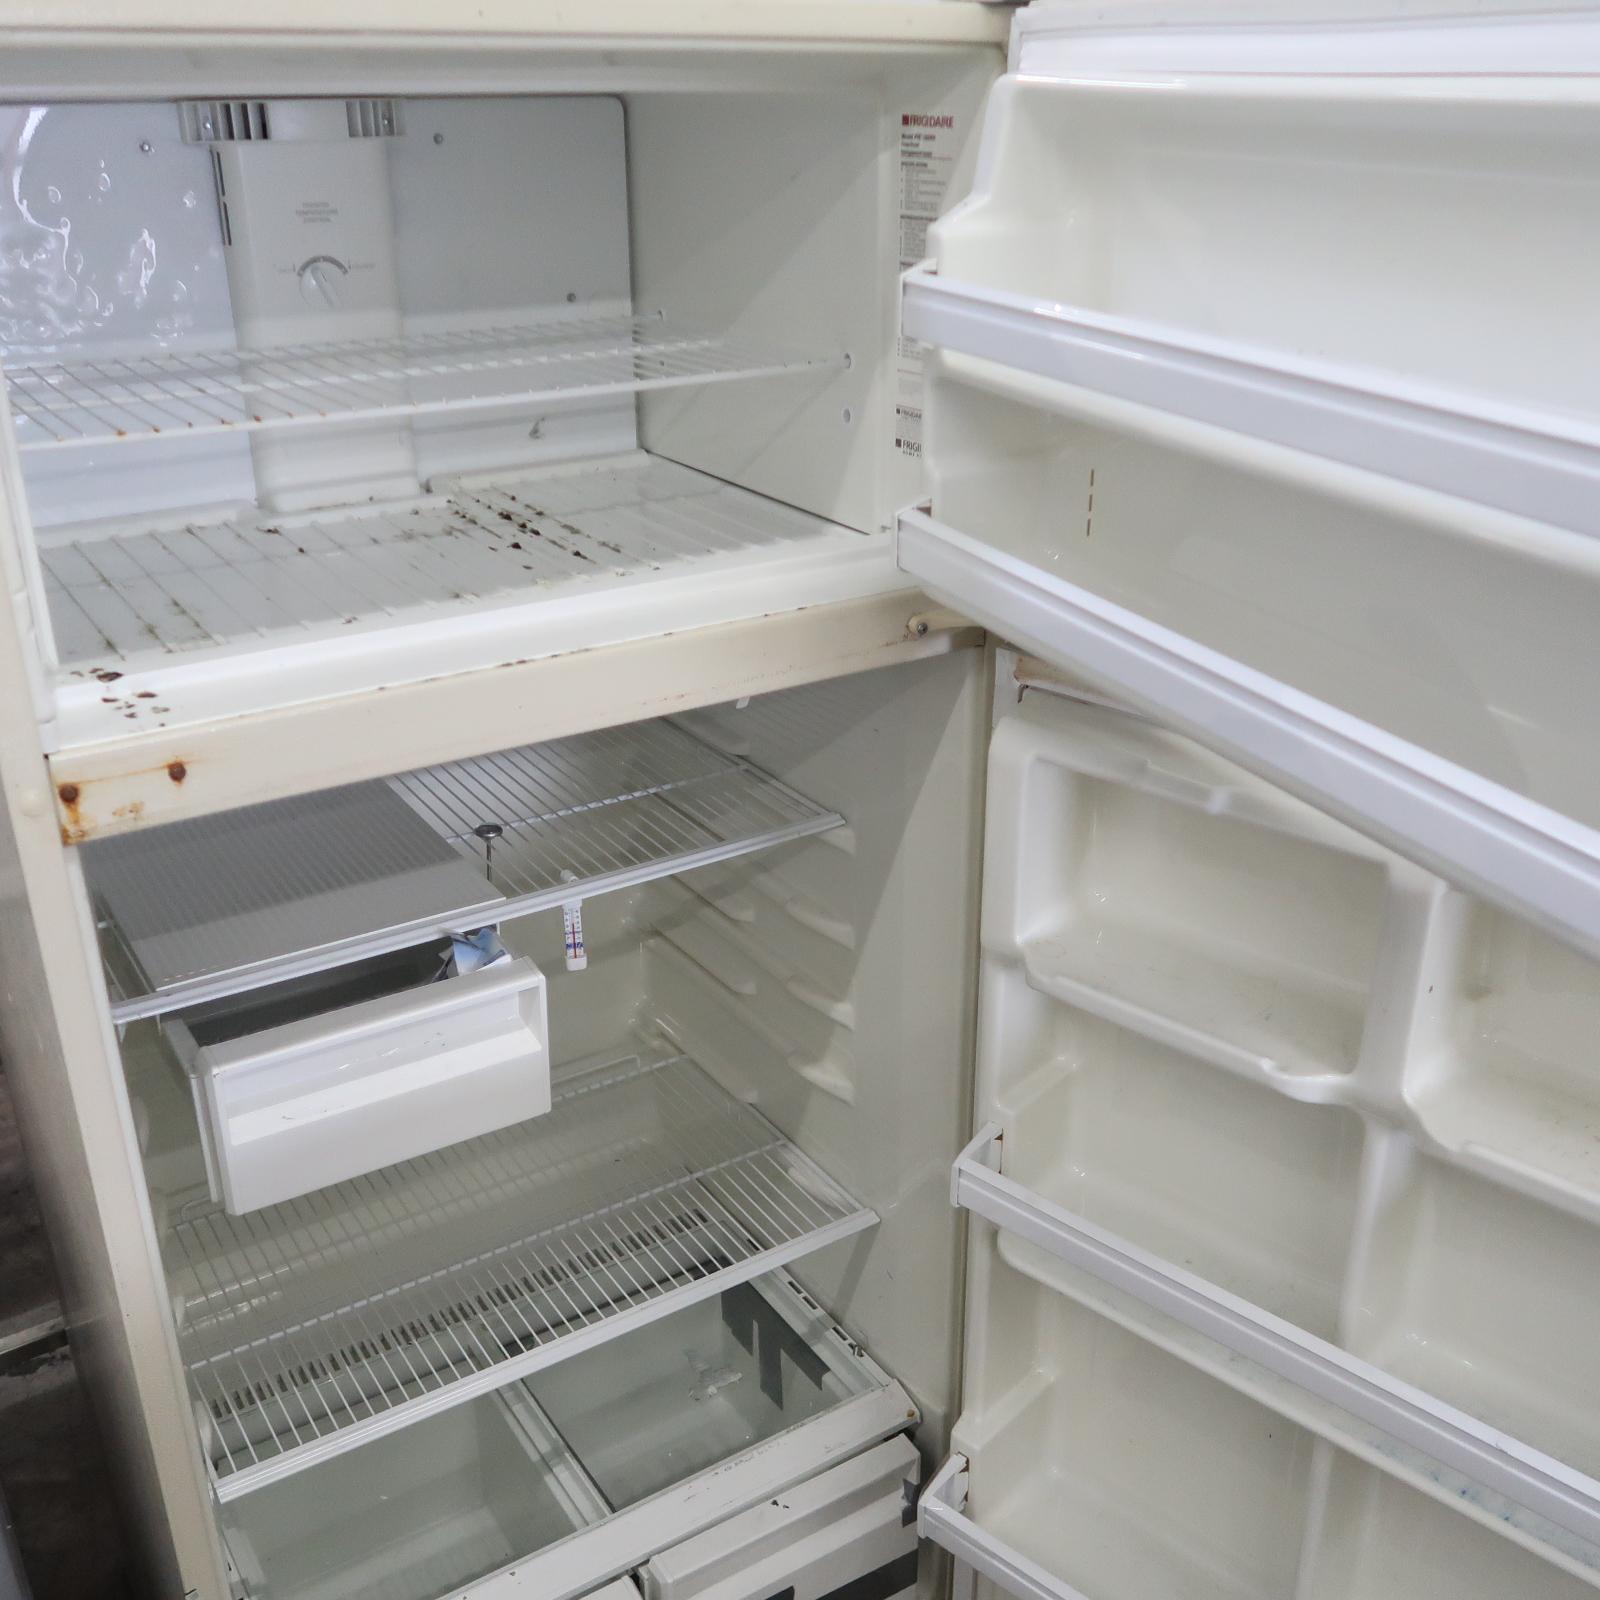 Frigidaire refrigerator/freezer